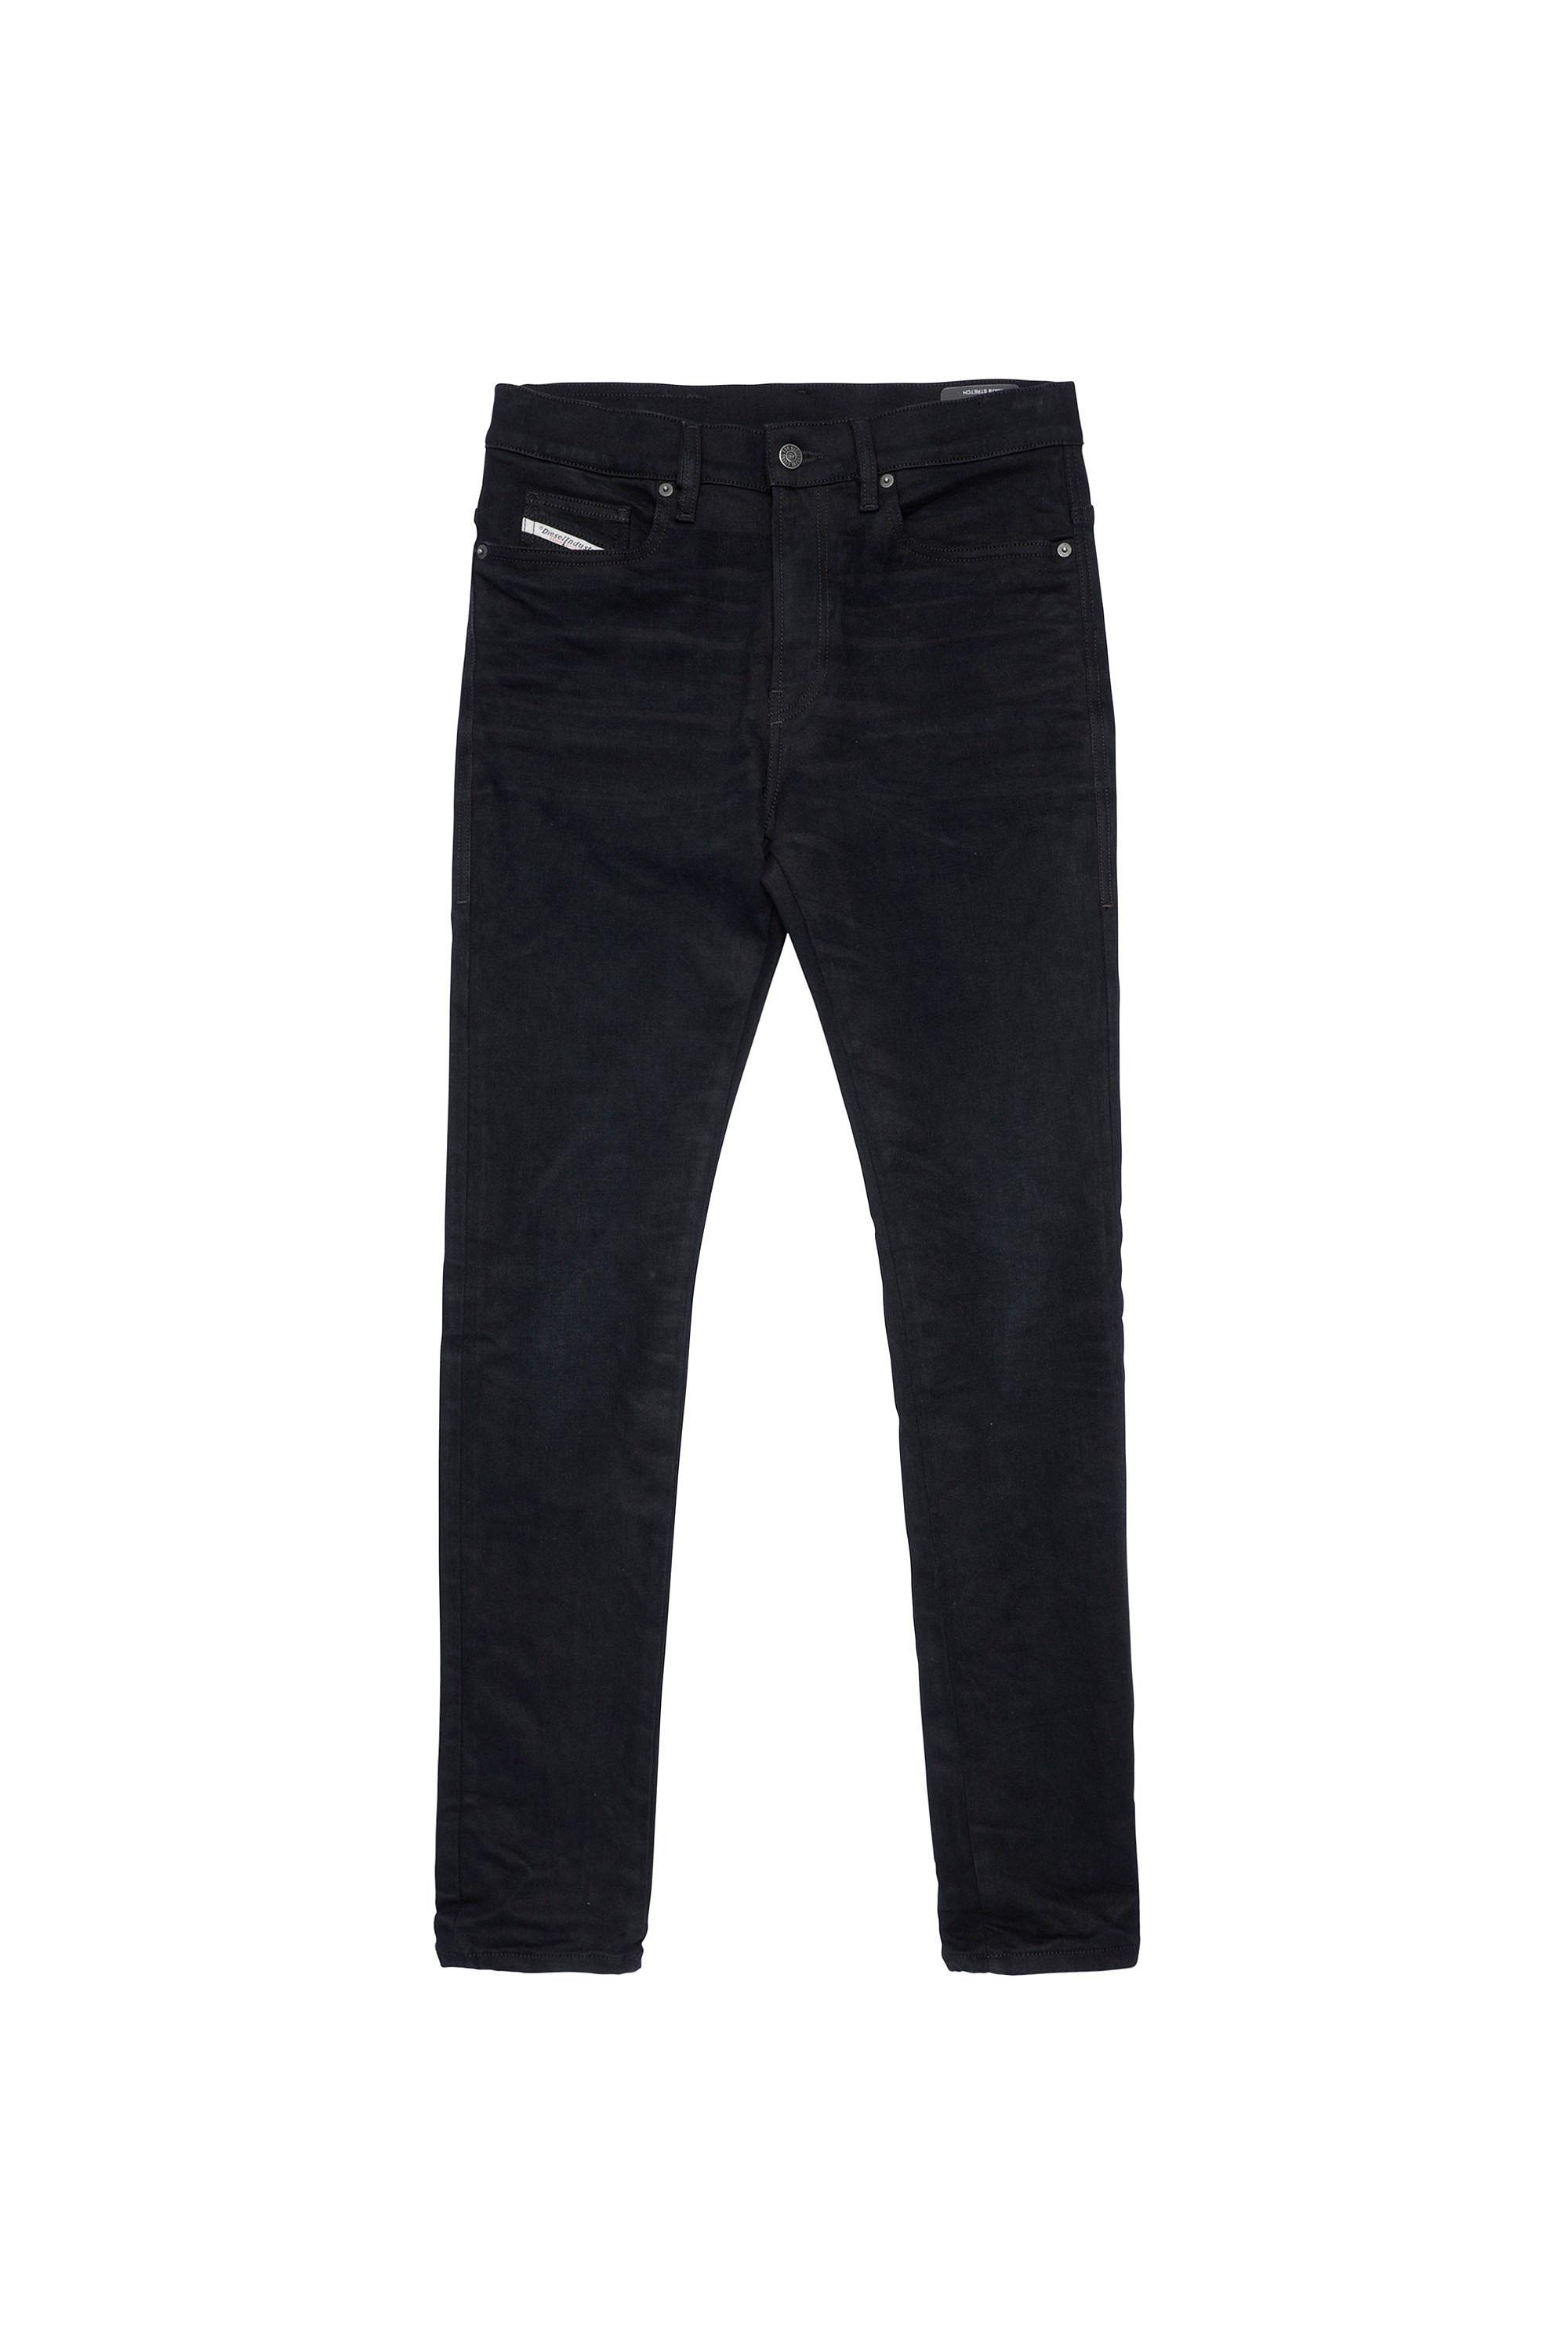 Diesel - D-Amny Skinny Jeans 09A79, Black/Dark grey - Image 2